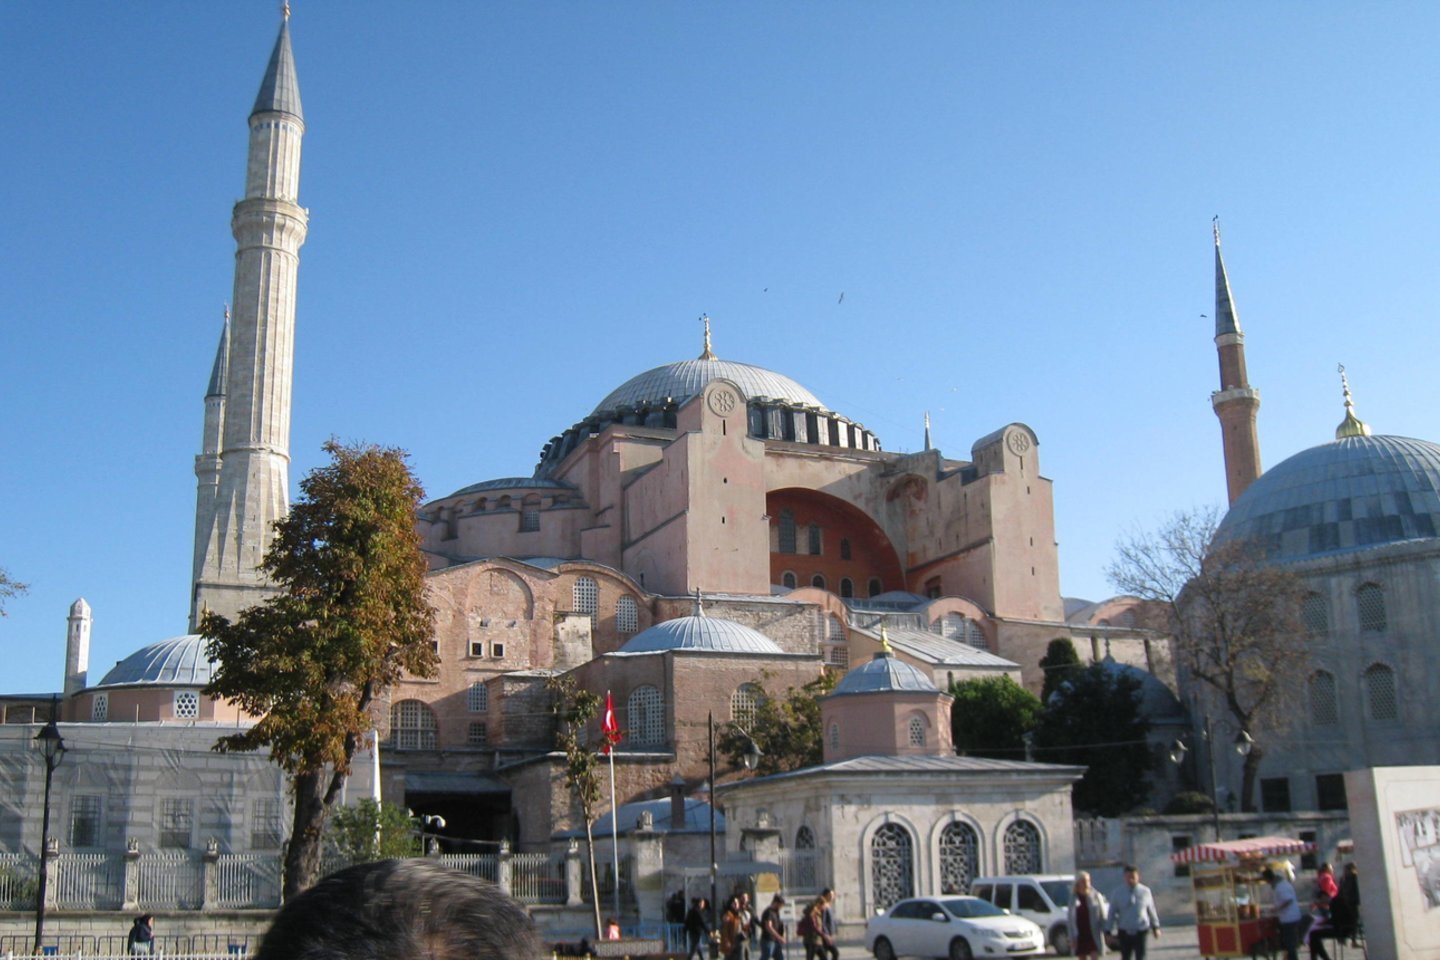 Liepos 24-ąją visam pasauliui žinomoje Dievo Šventosios Išminties katedroje Stambule įvyko pirmasis penktadienio namazas – musulmonų religinės apeigos.<br> M.Augulytės nuotr.